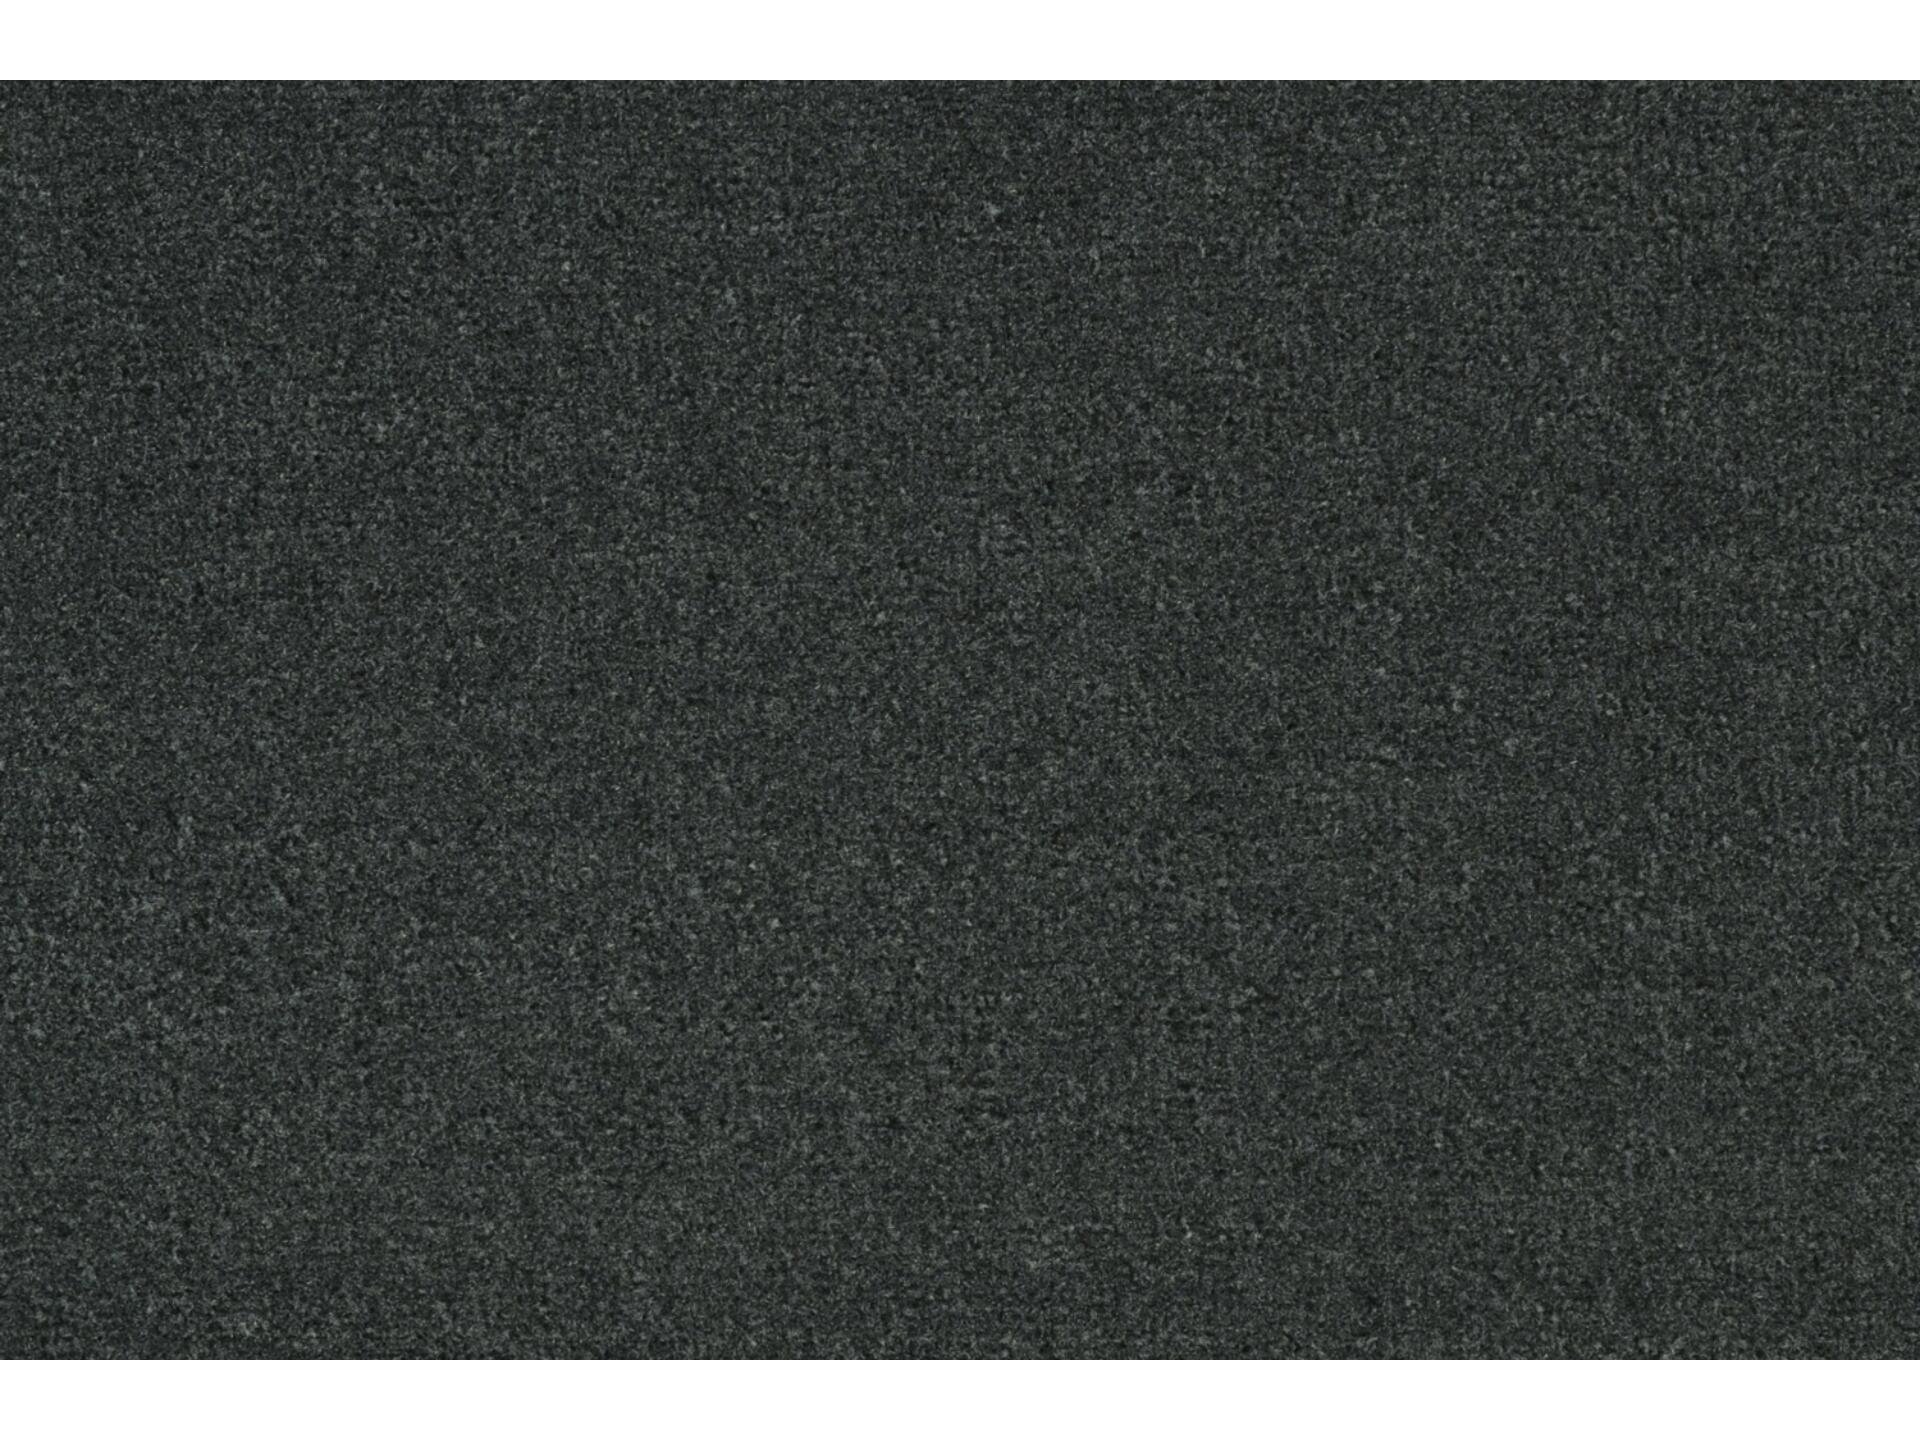 Unimat paillasson antisalissant 40x60 cm gris